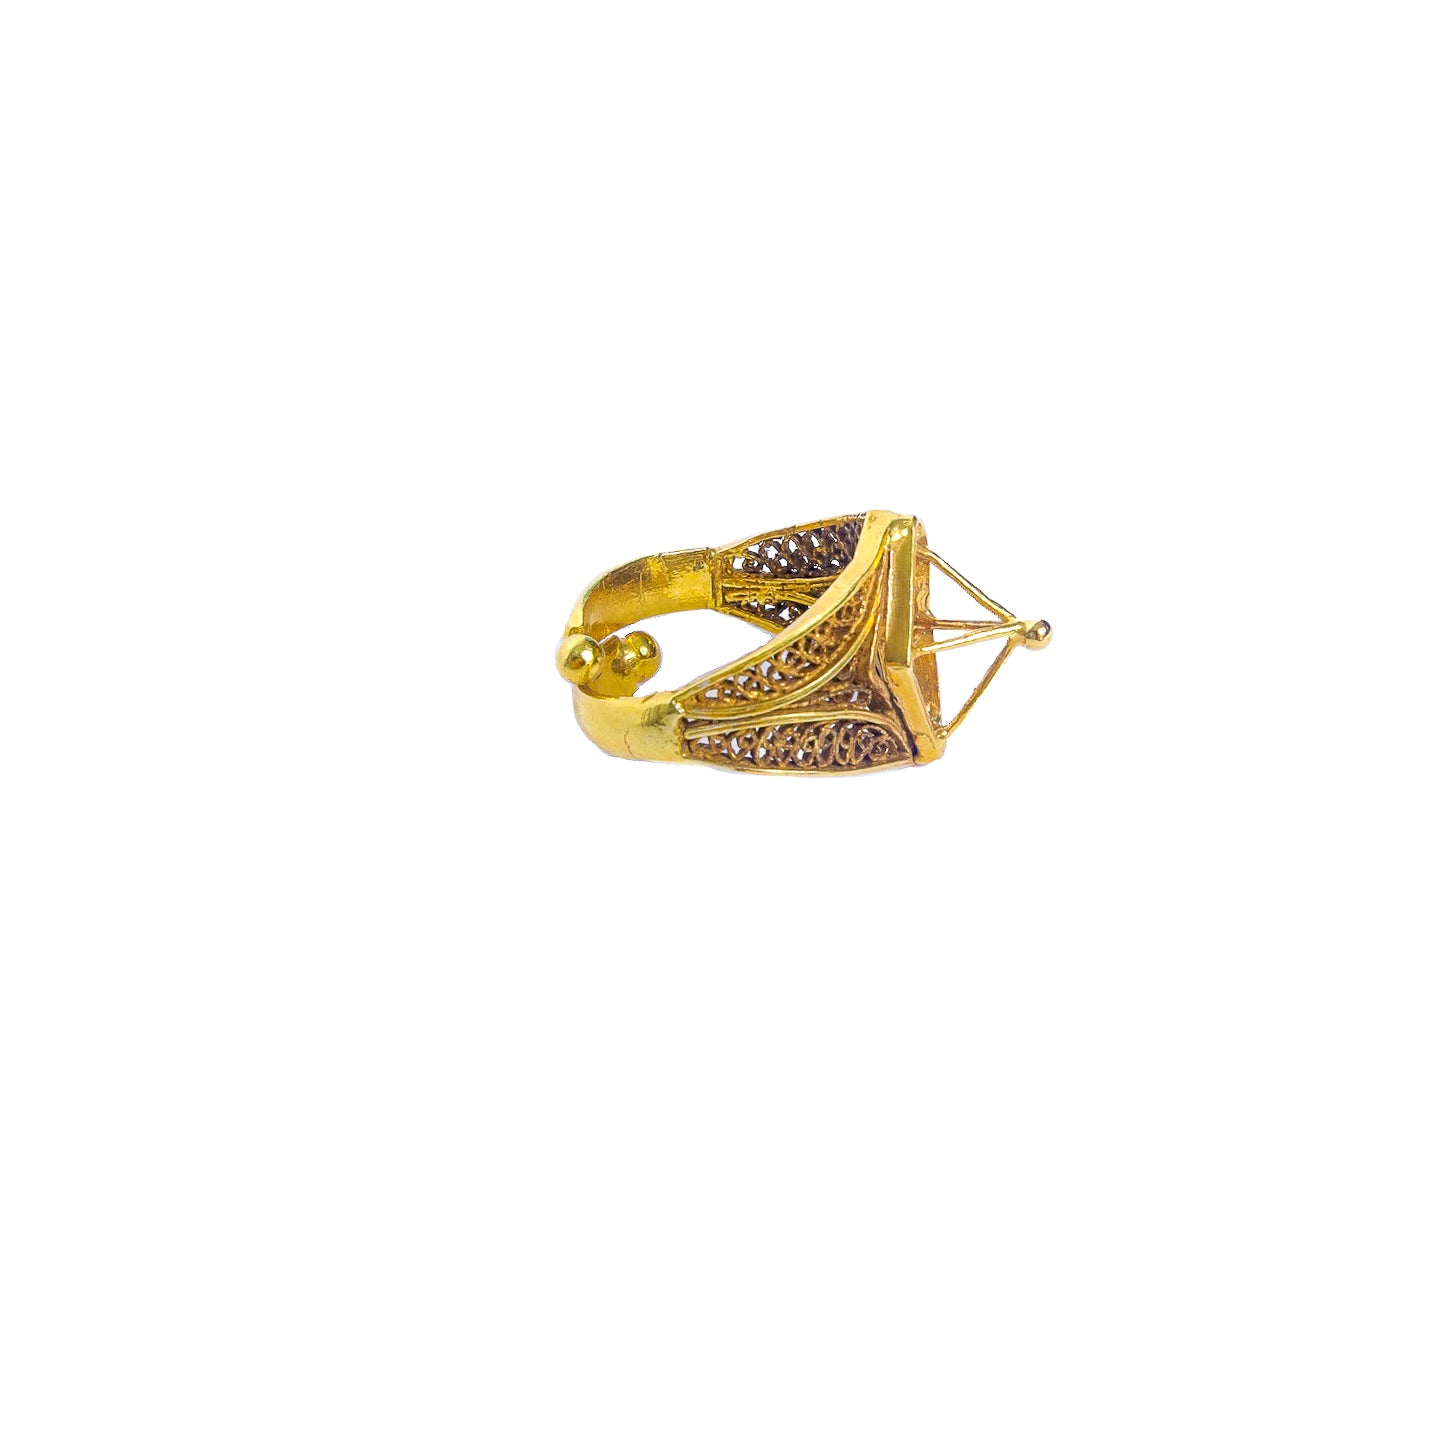 Zion 24K Gold Vermeil Ring